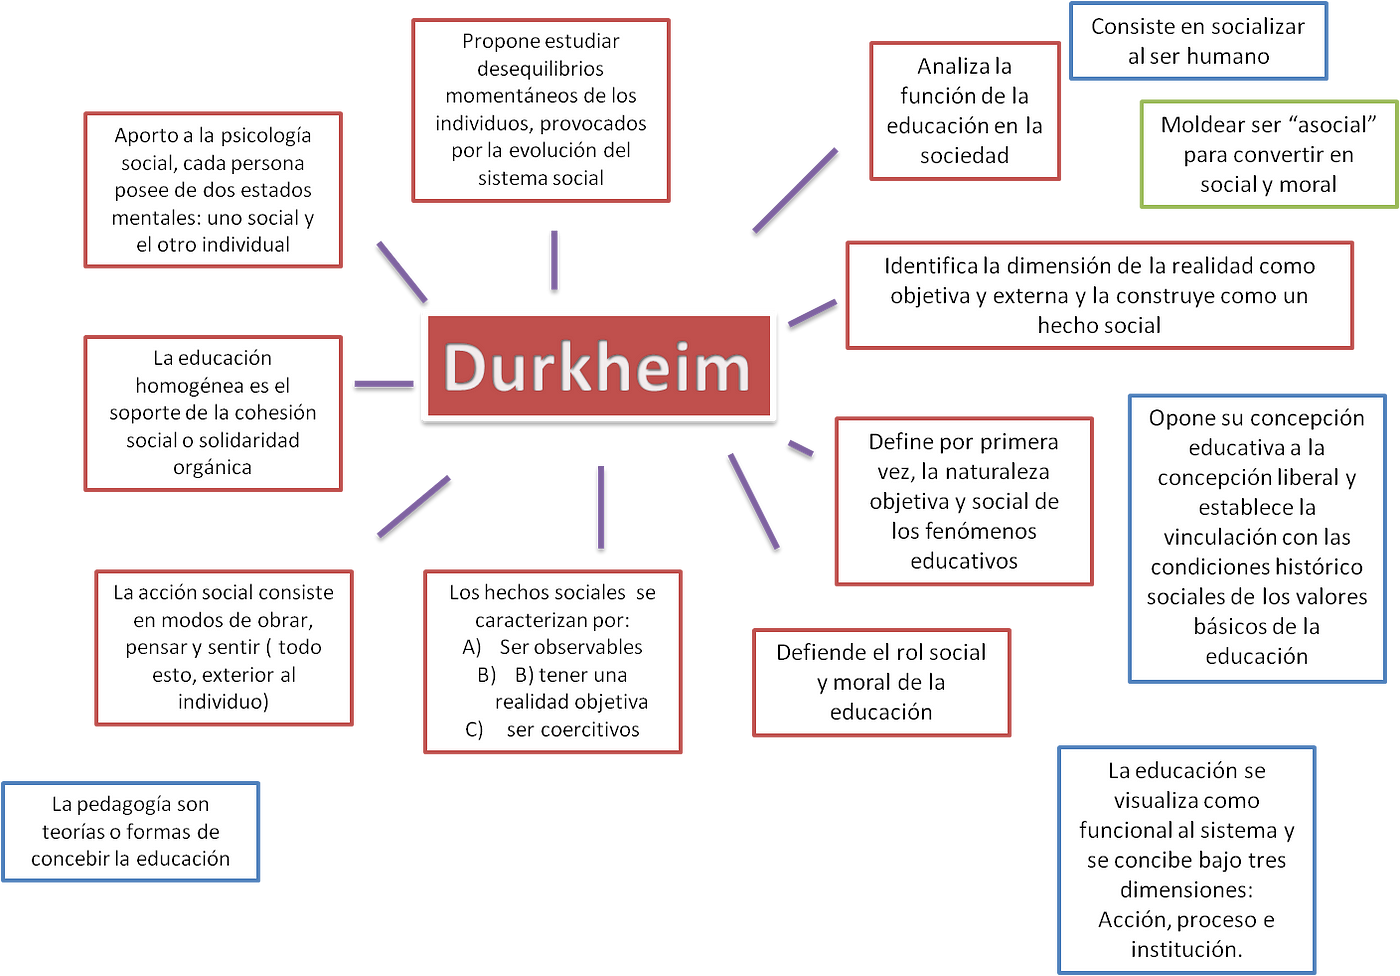 EDUCACIÓN Y SOCIOLOGÍA. Émile Durkheim | by Antonio Molleda | El Circulo |  Medium